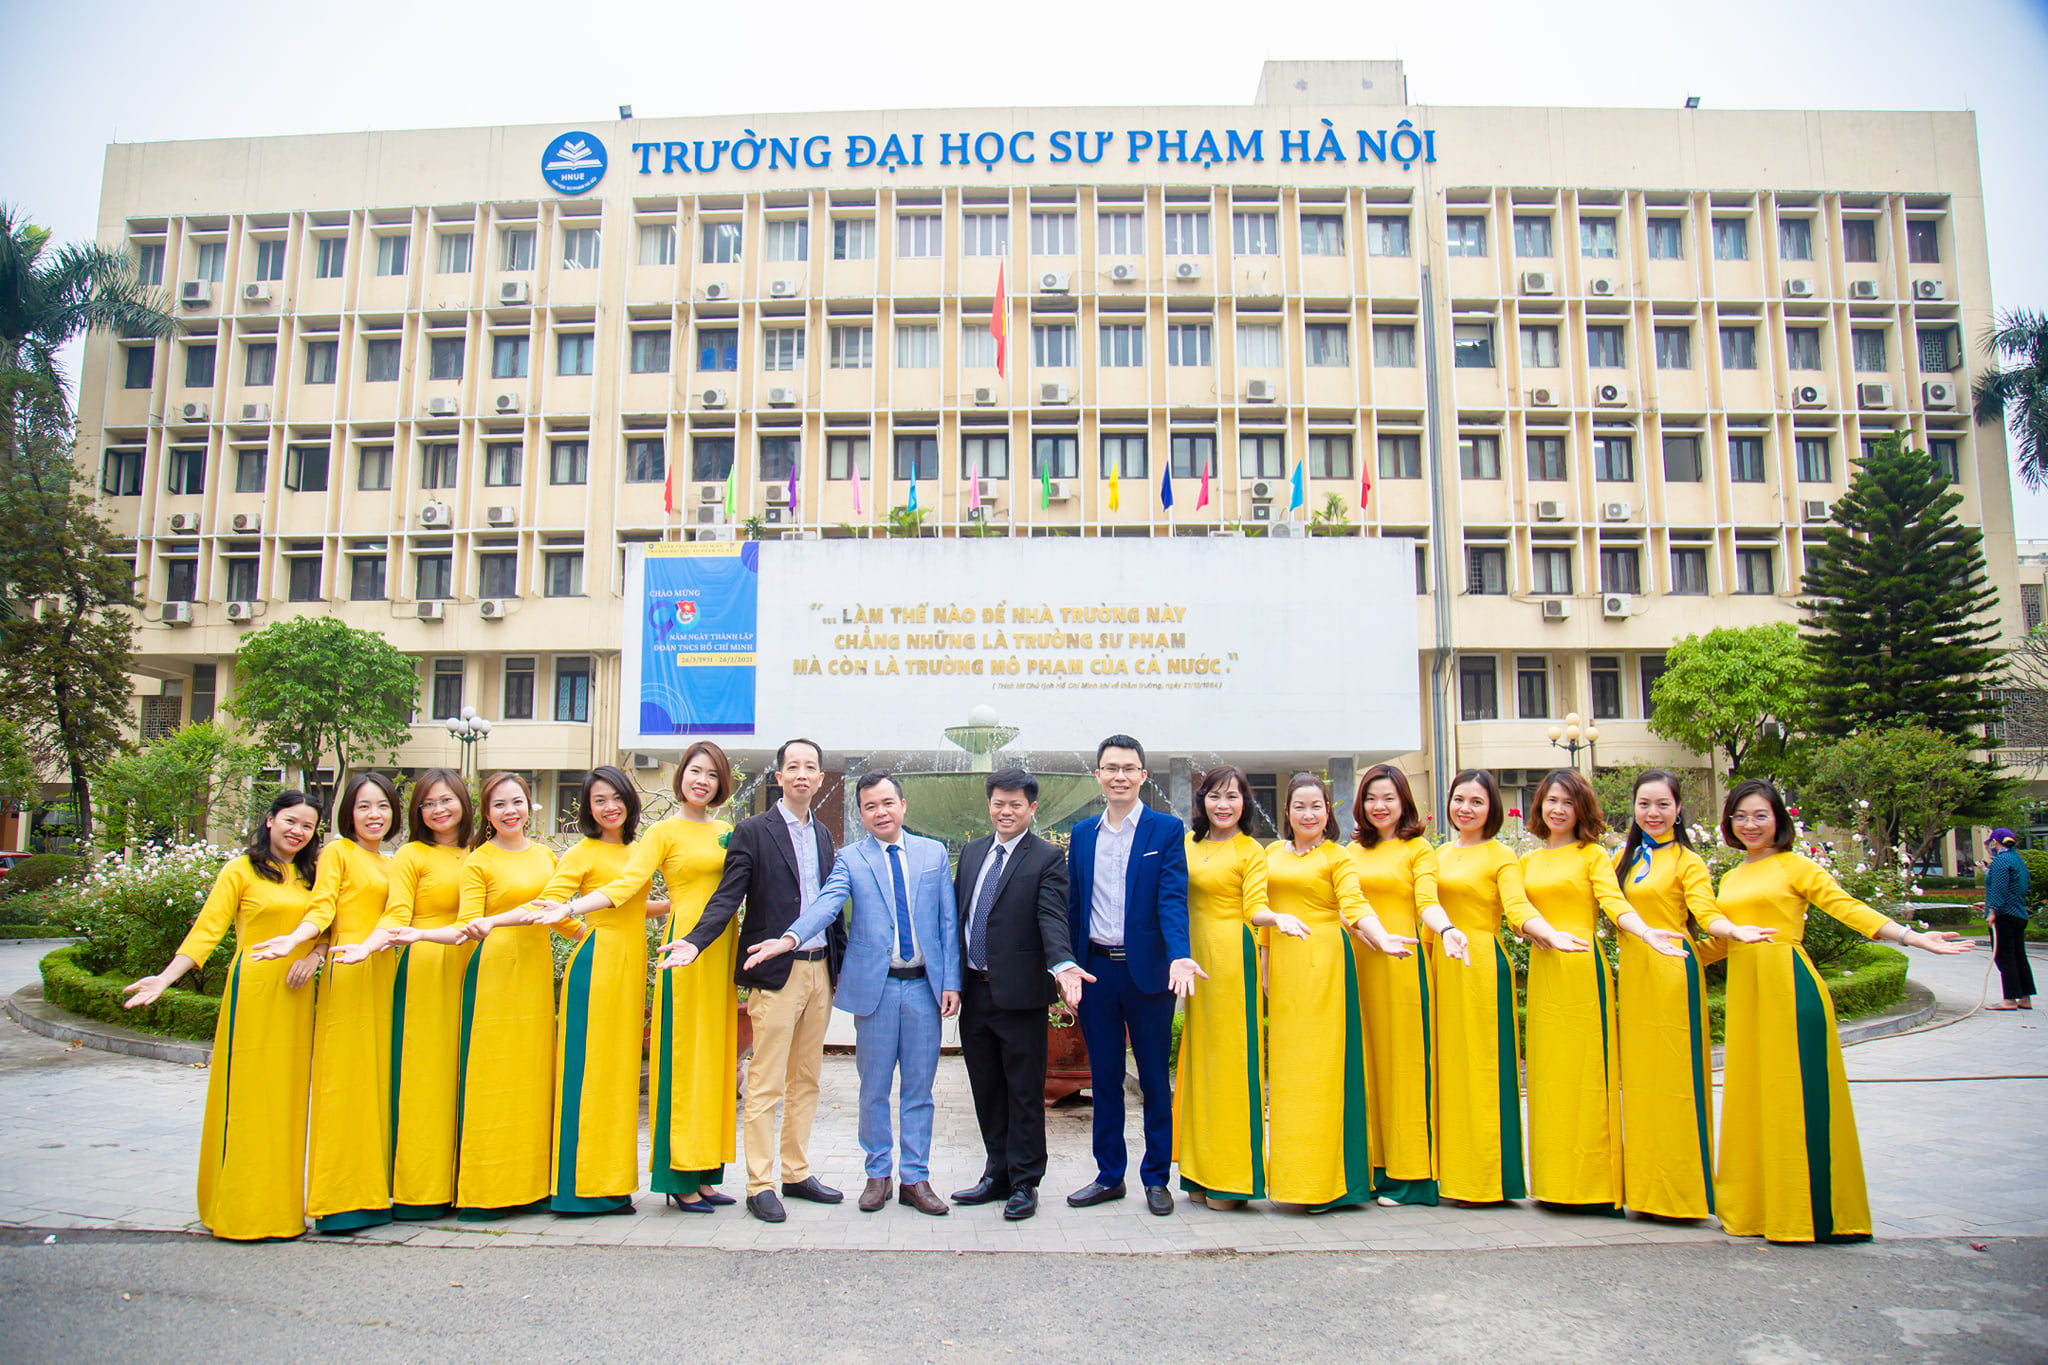 Điểm chuẩn Đại học Sư phạm Hà Nội (HNUE) năm 2021 mới nhất.